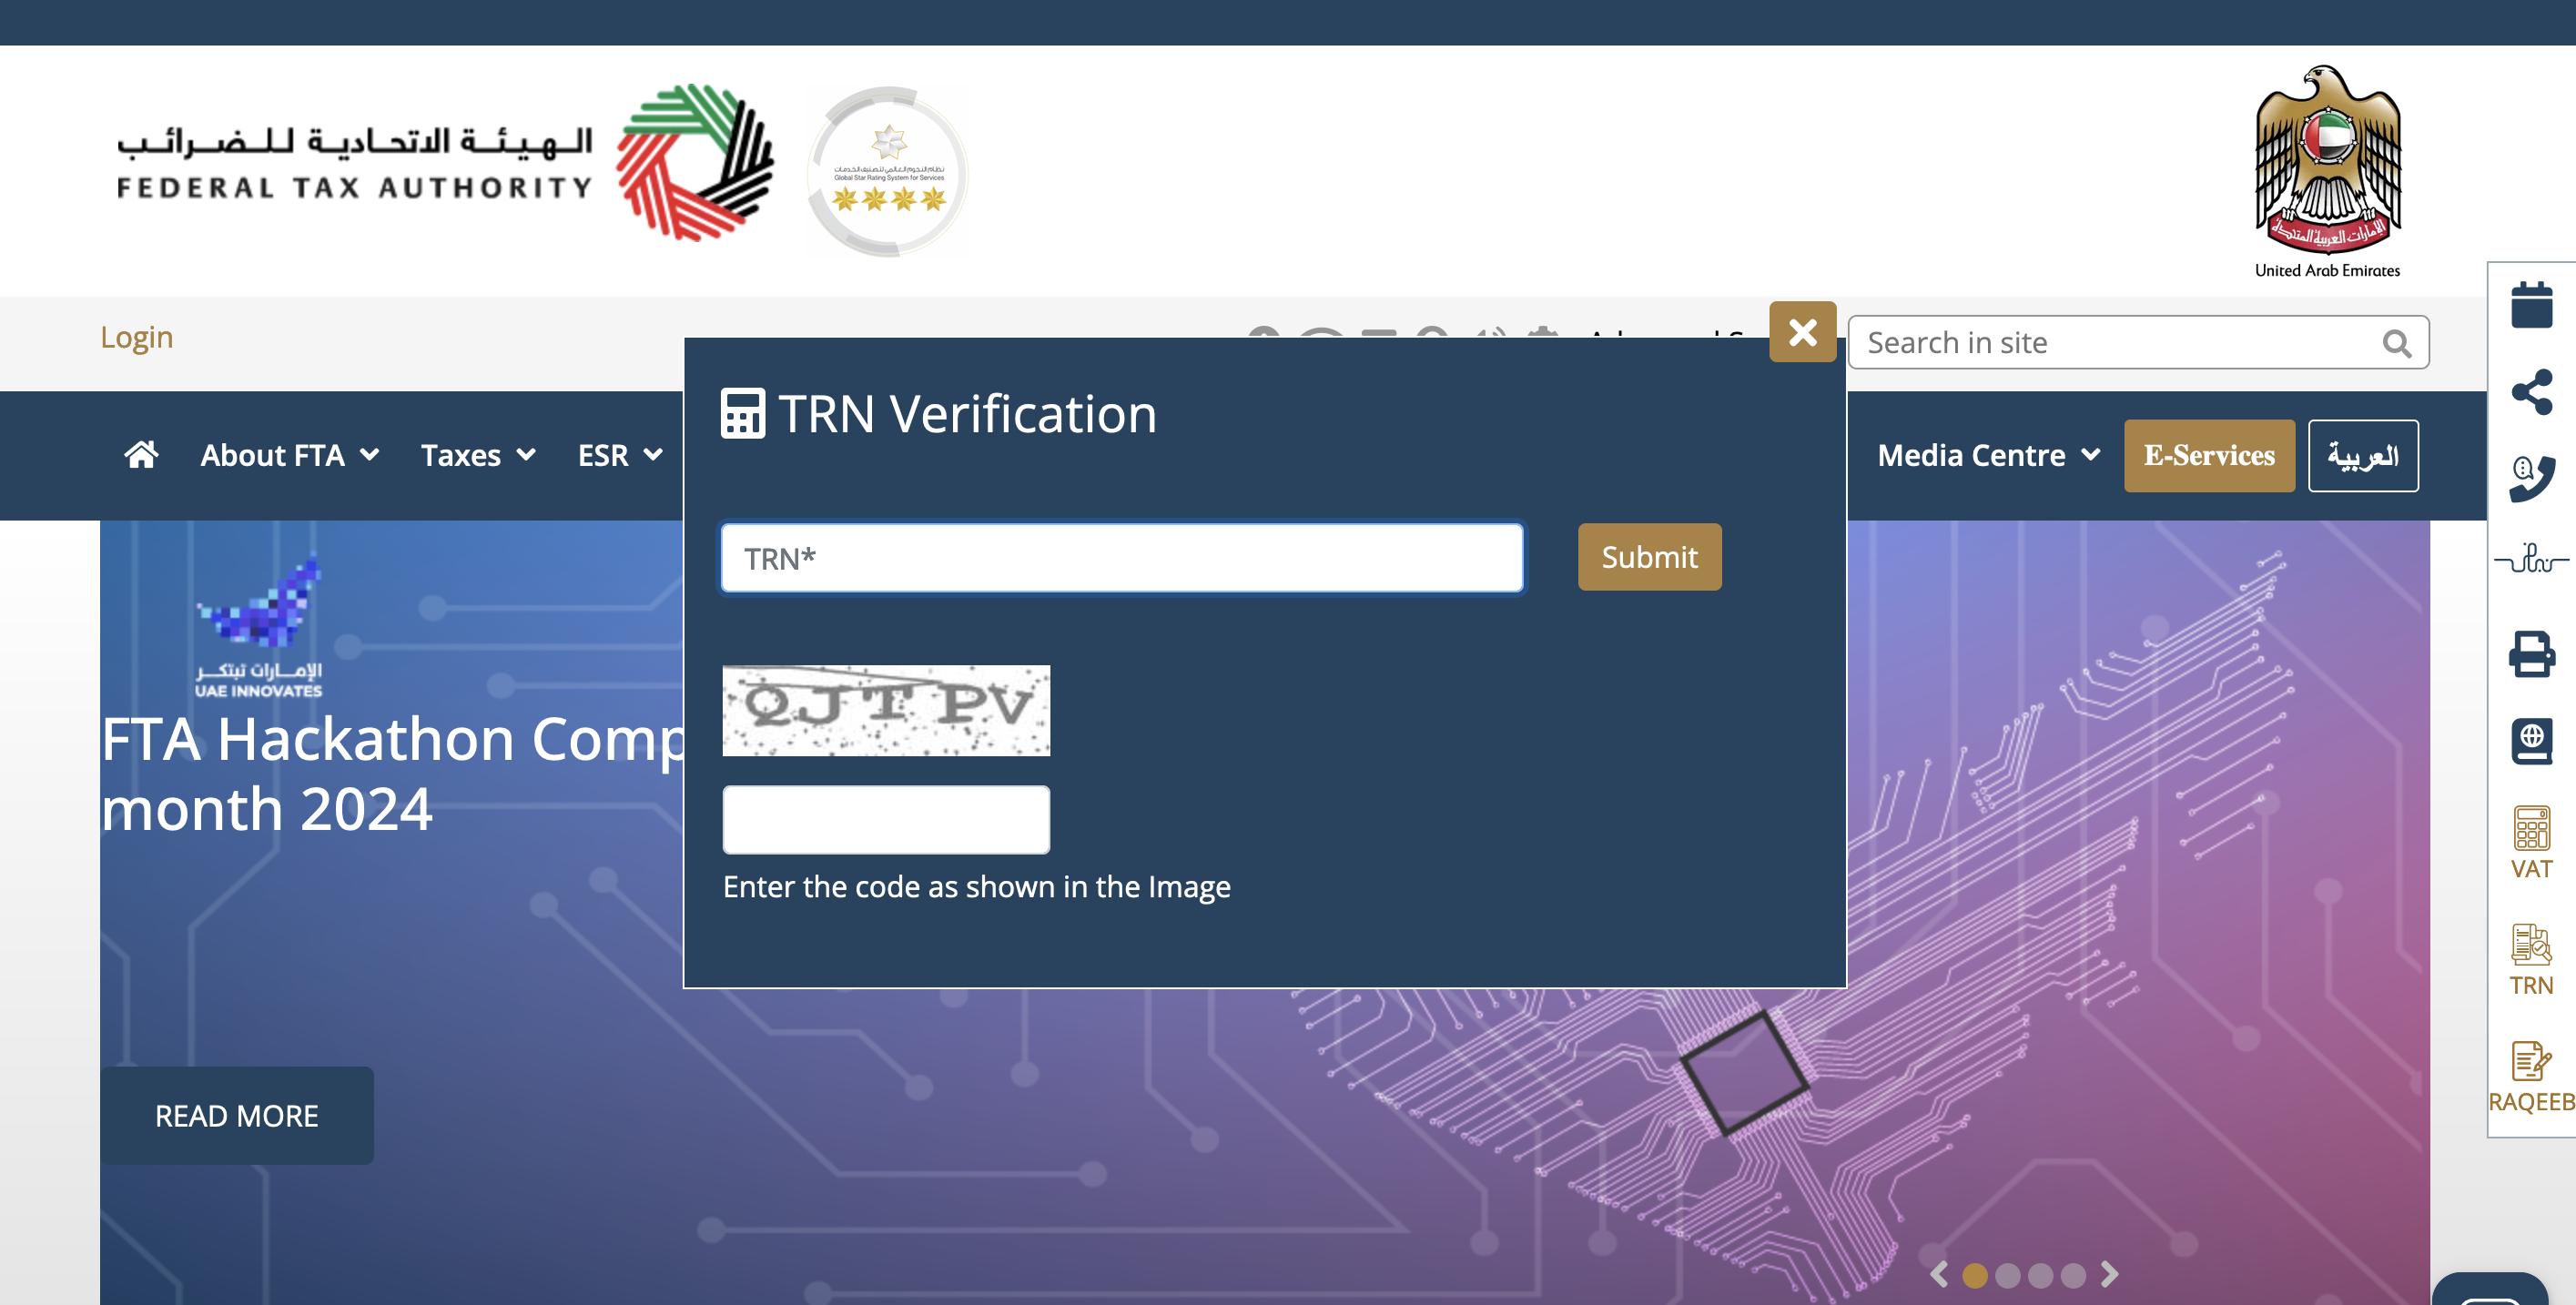 TRN Verification in UAE